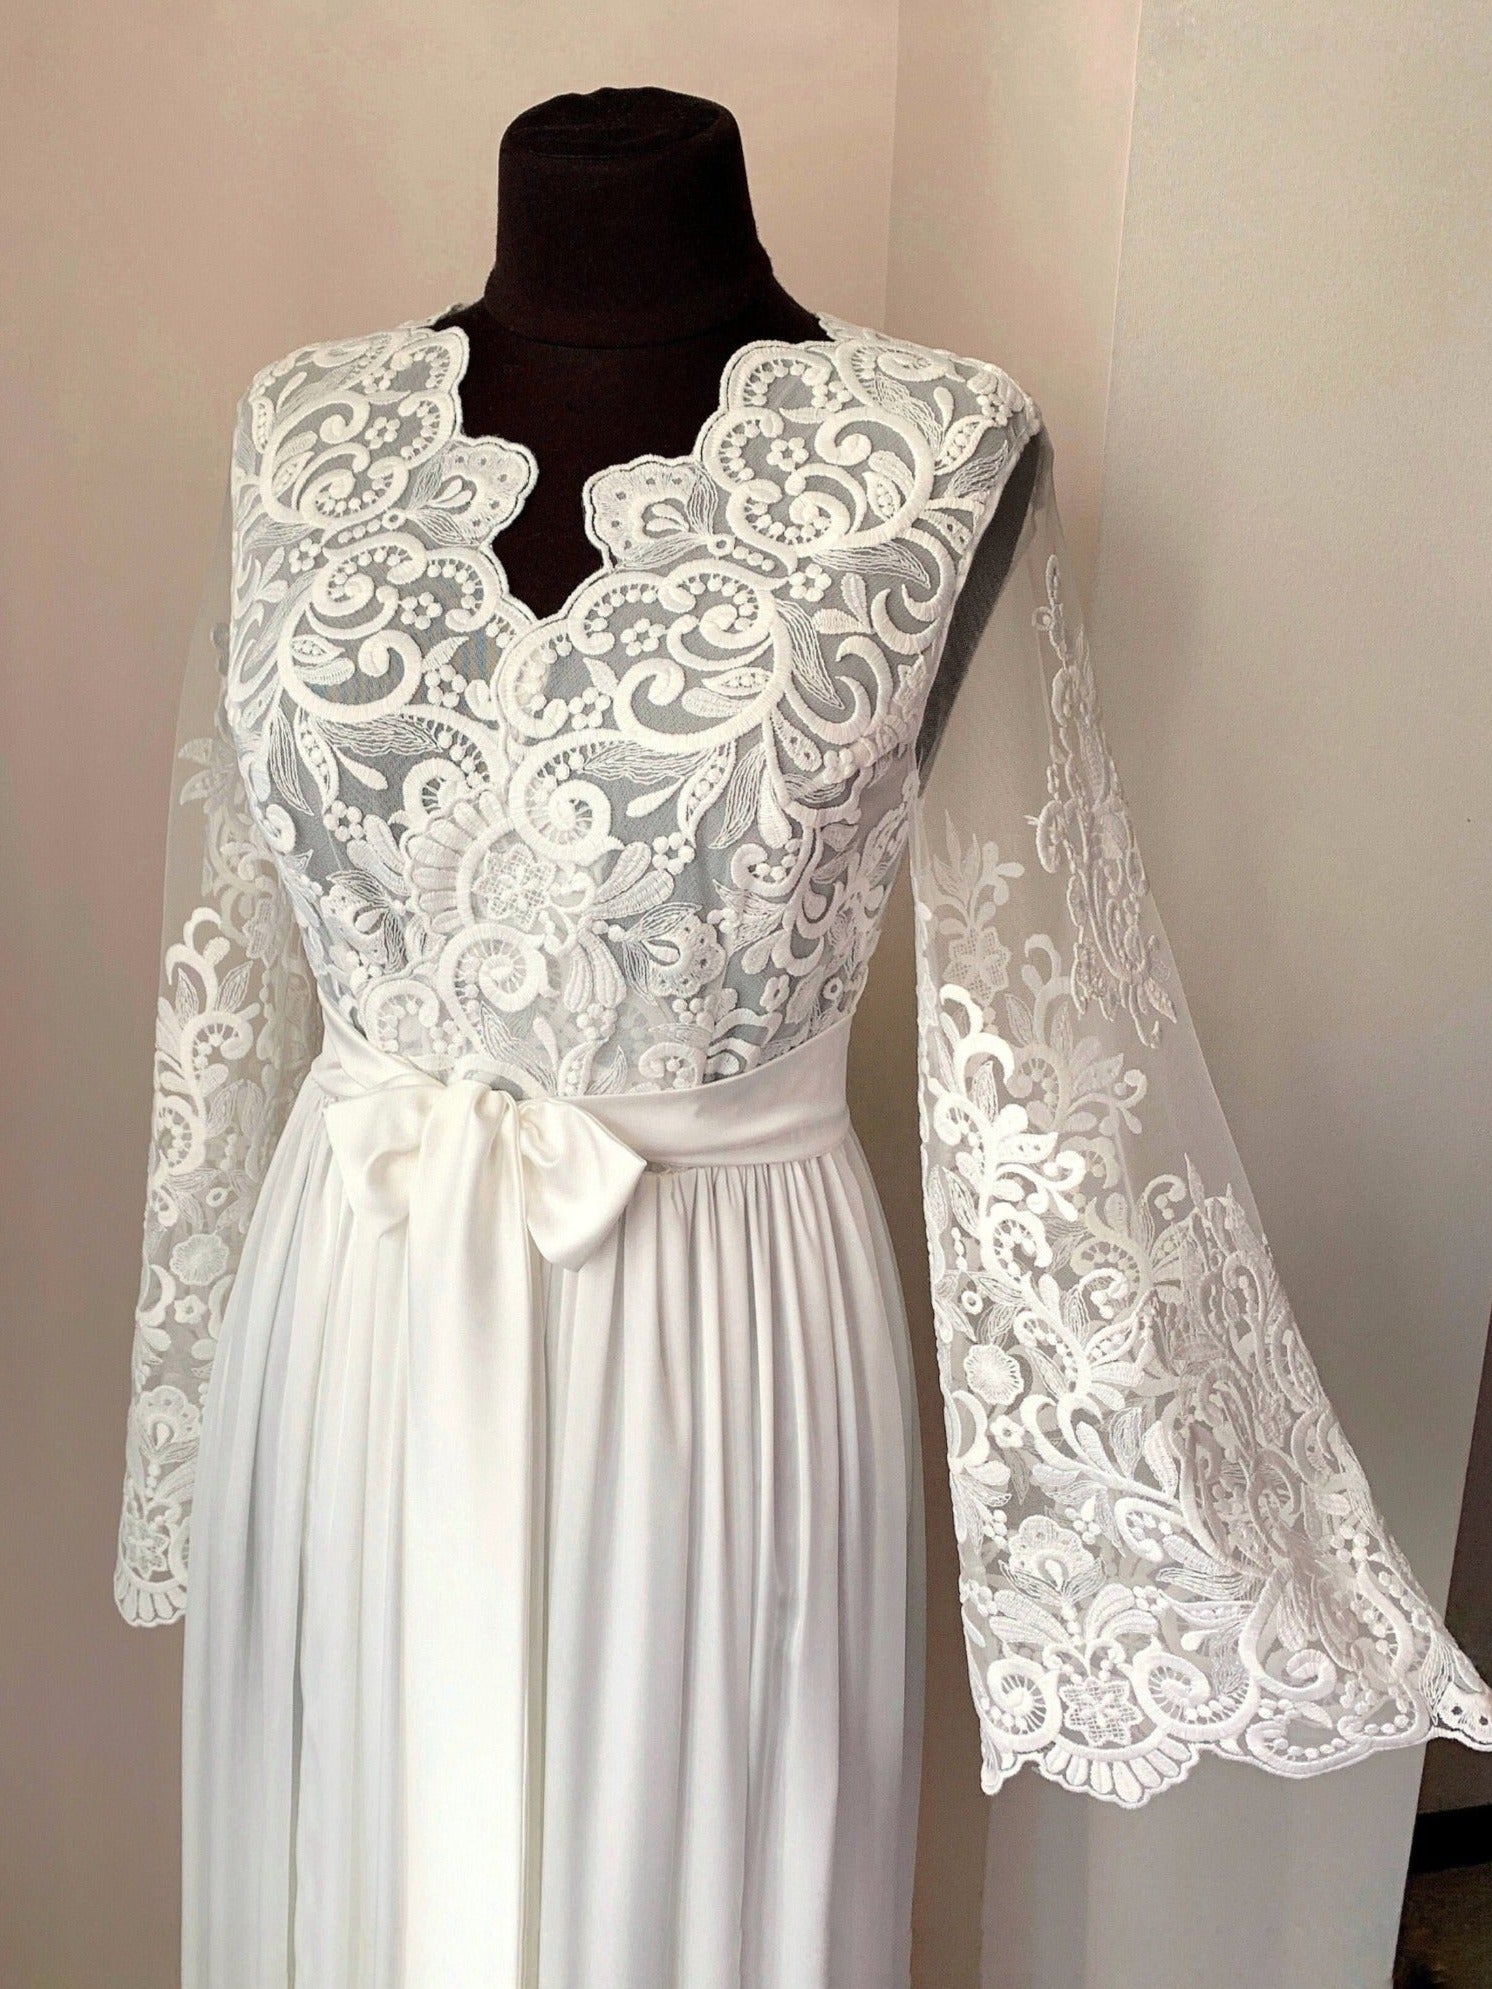 Amazing boudoir robe lace